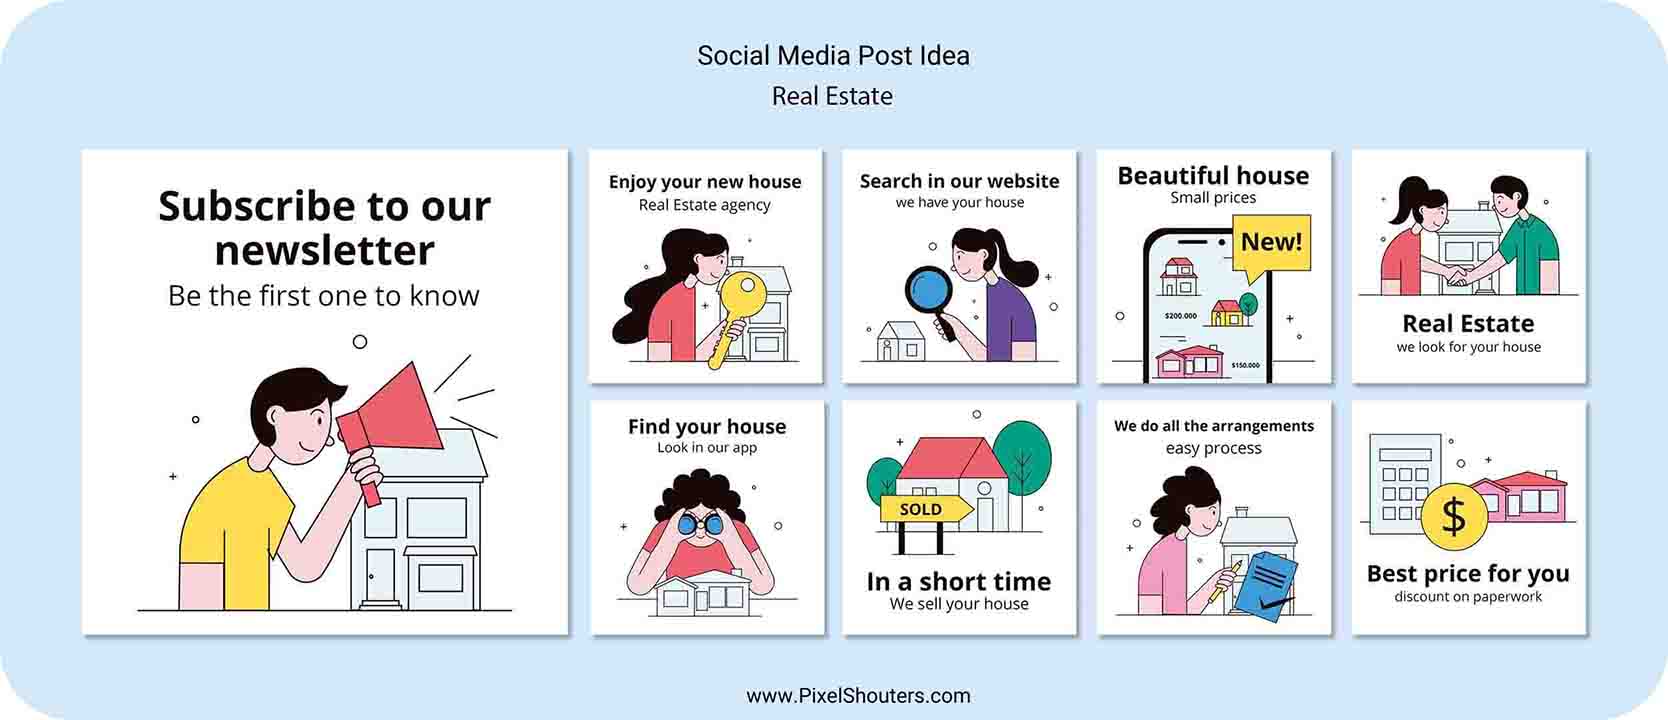 Social Media Post idea